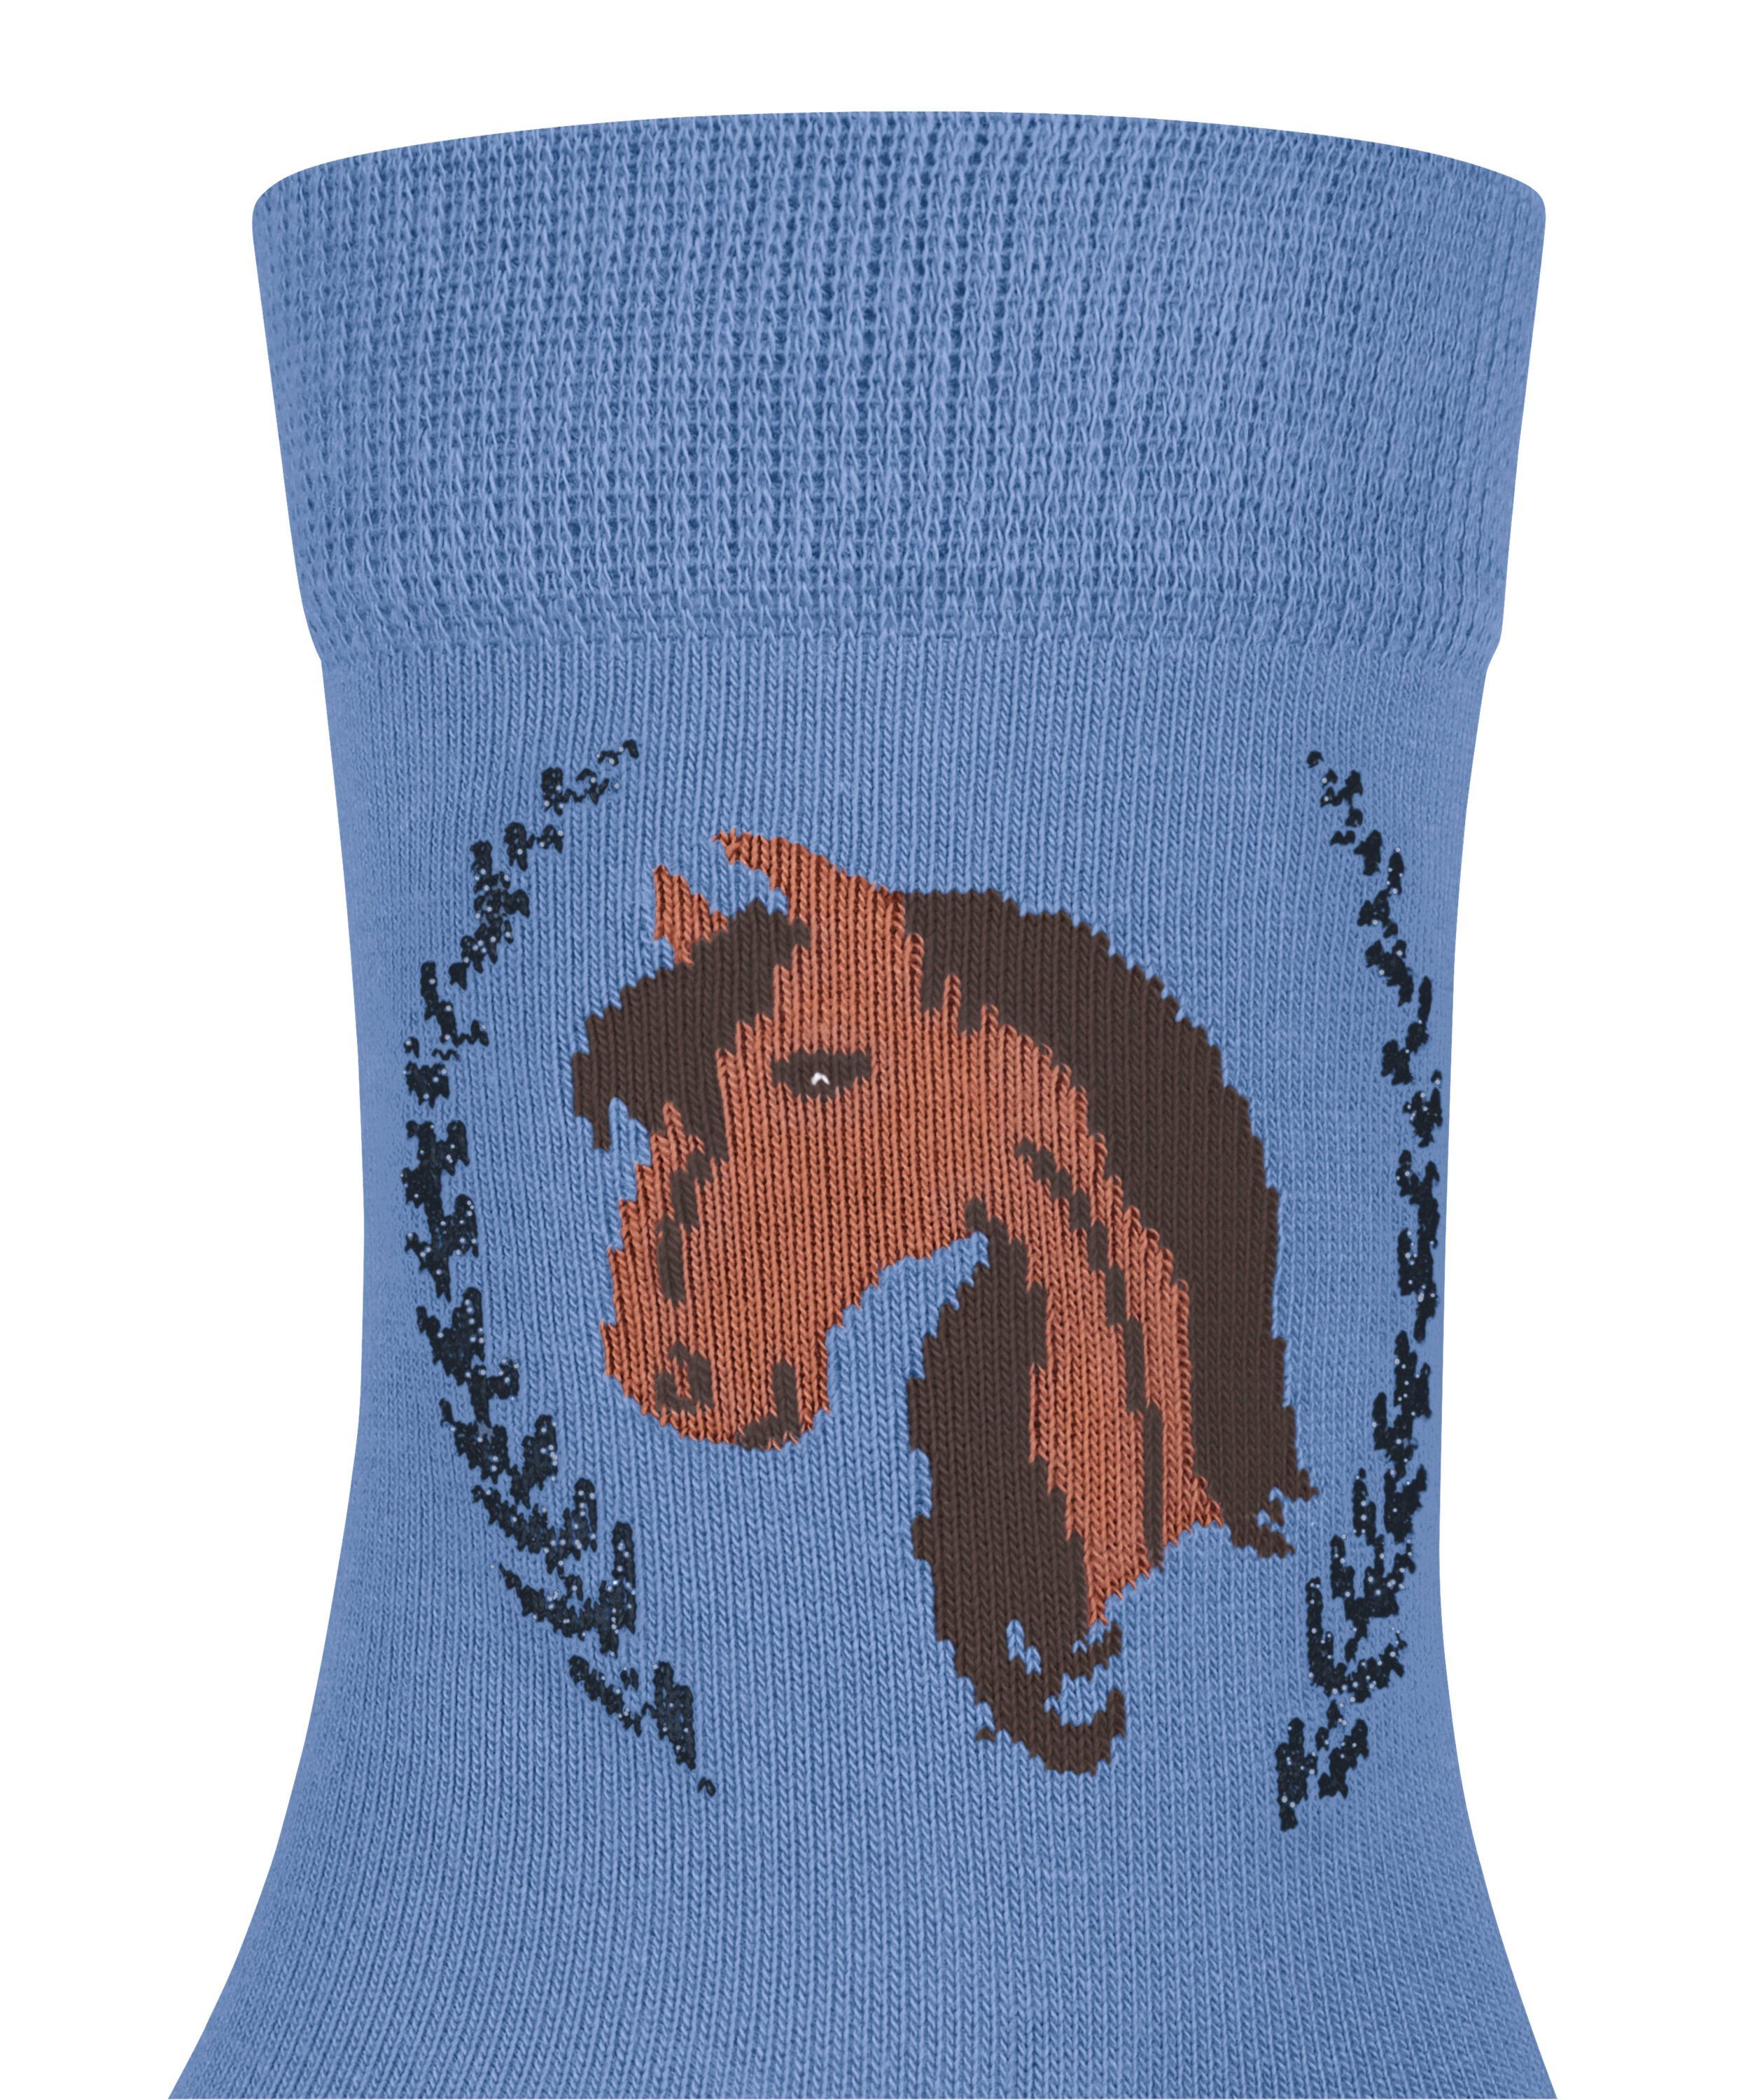 FALKE Socken Horse (1-Paar) azure (6327)